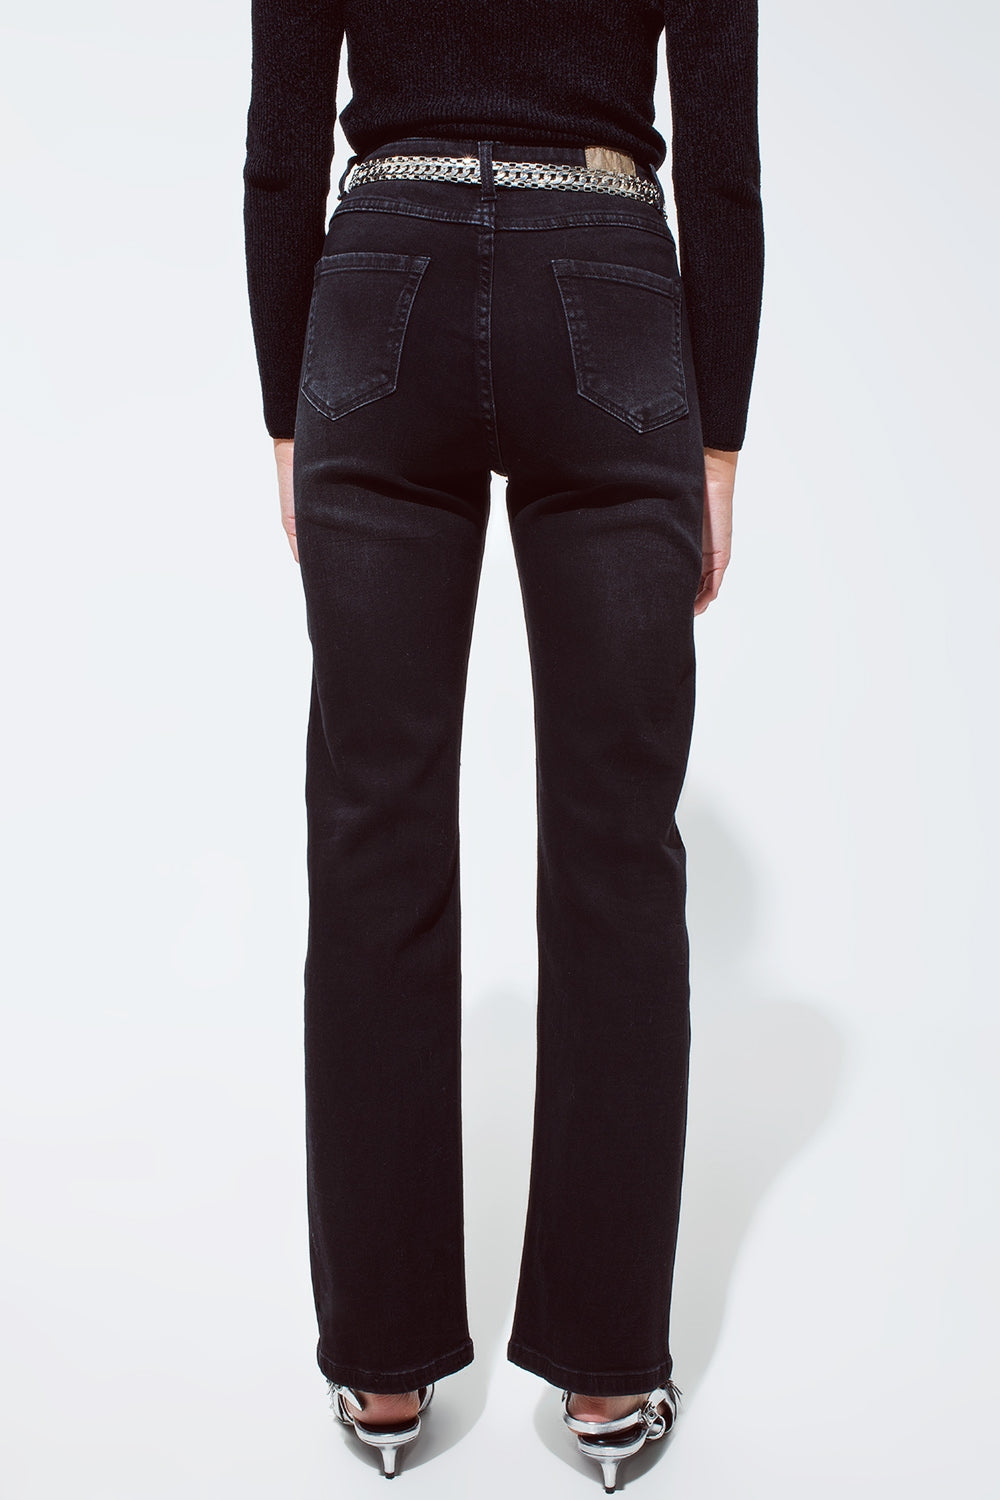 Jeans rectos en negro con detalles de strass plateados